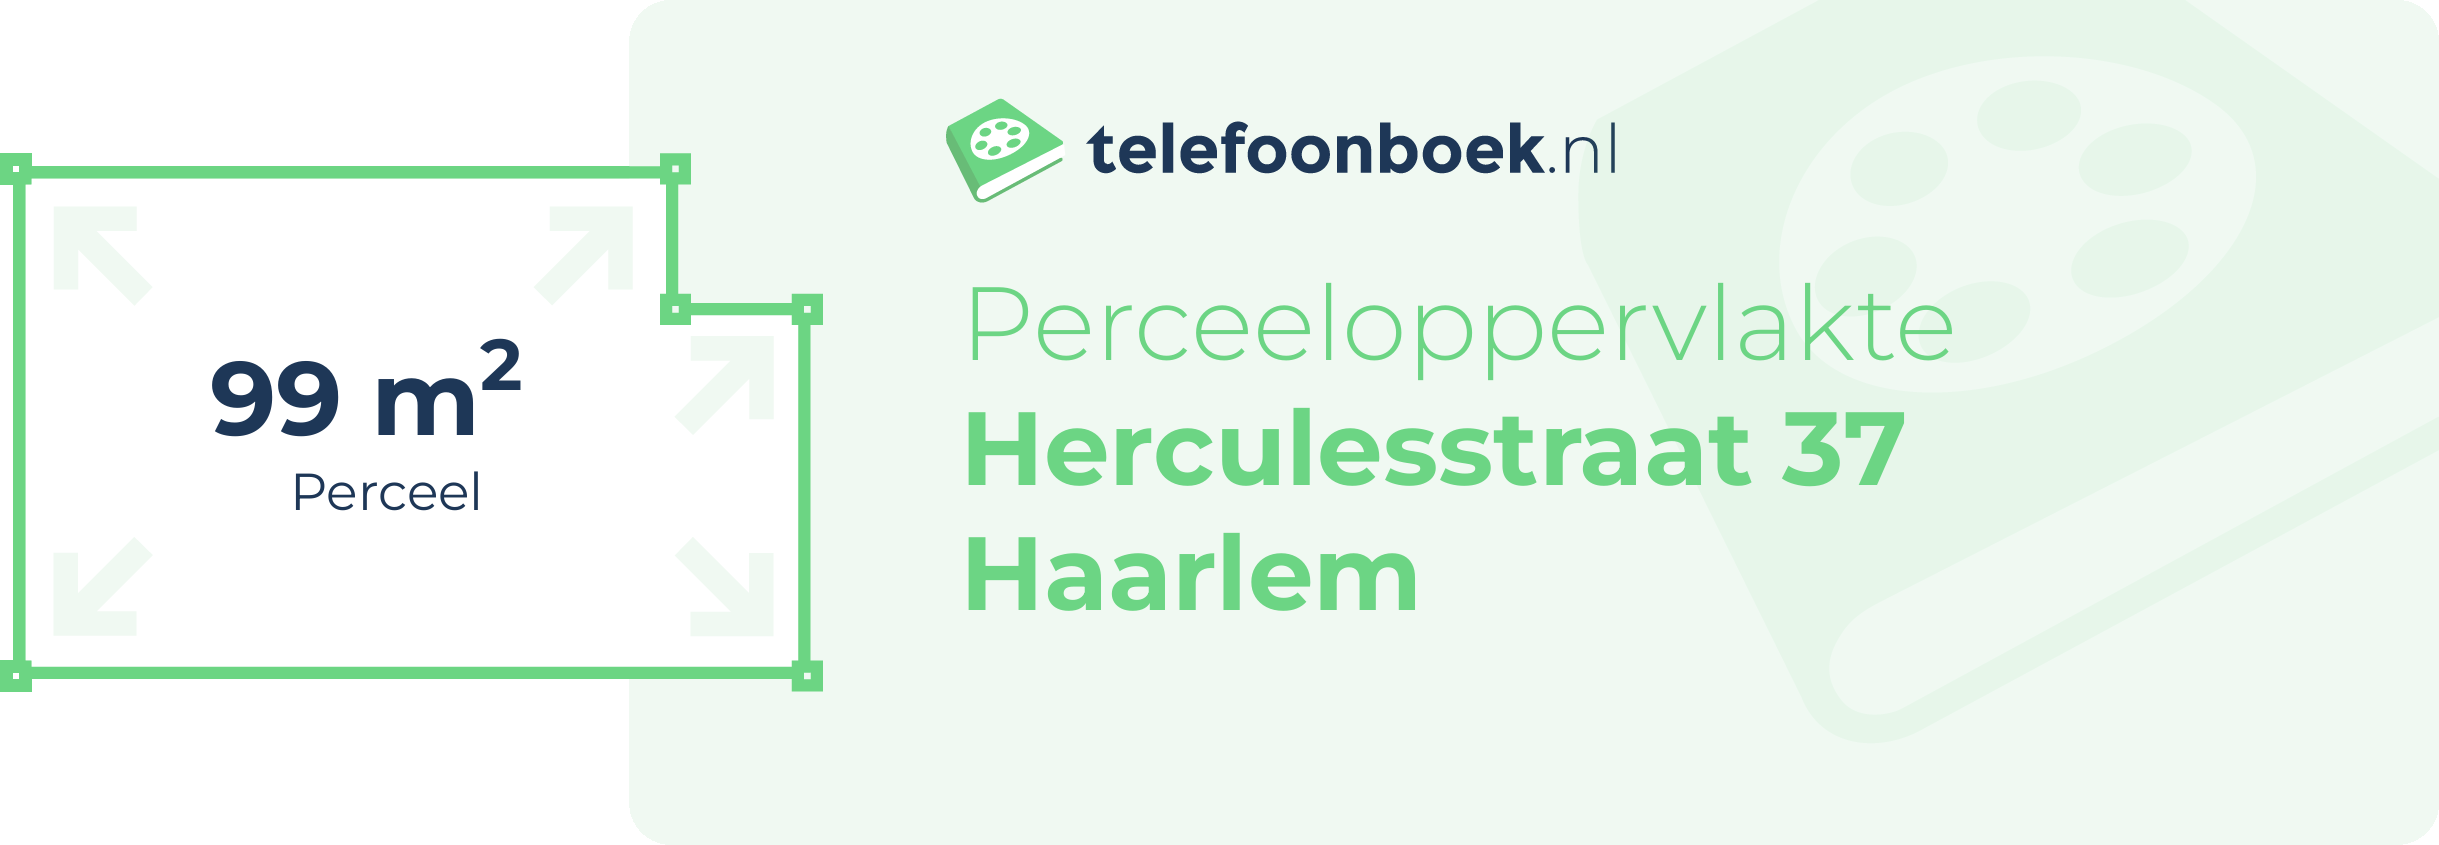 Perceeloppervlakte Herculesstraat 37 Haarlem